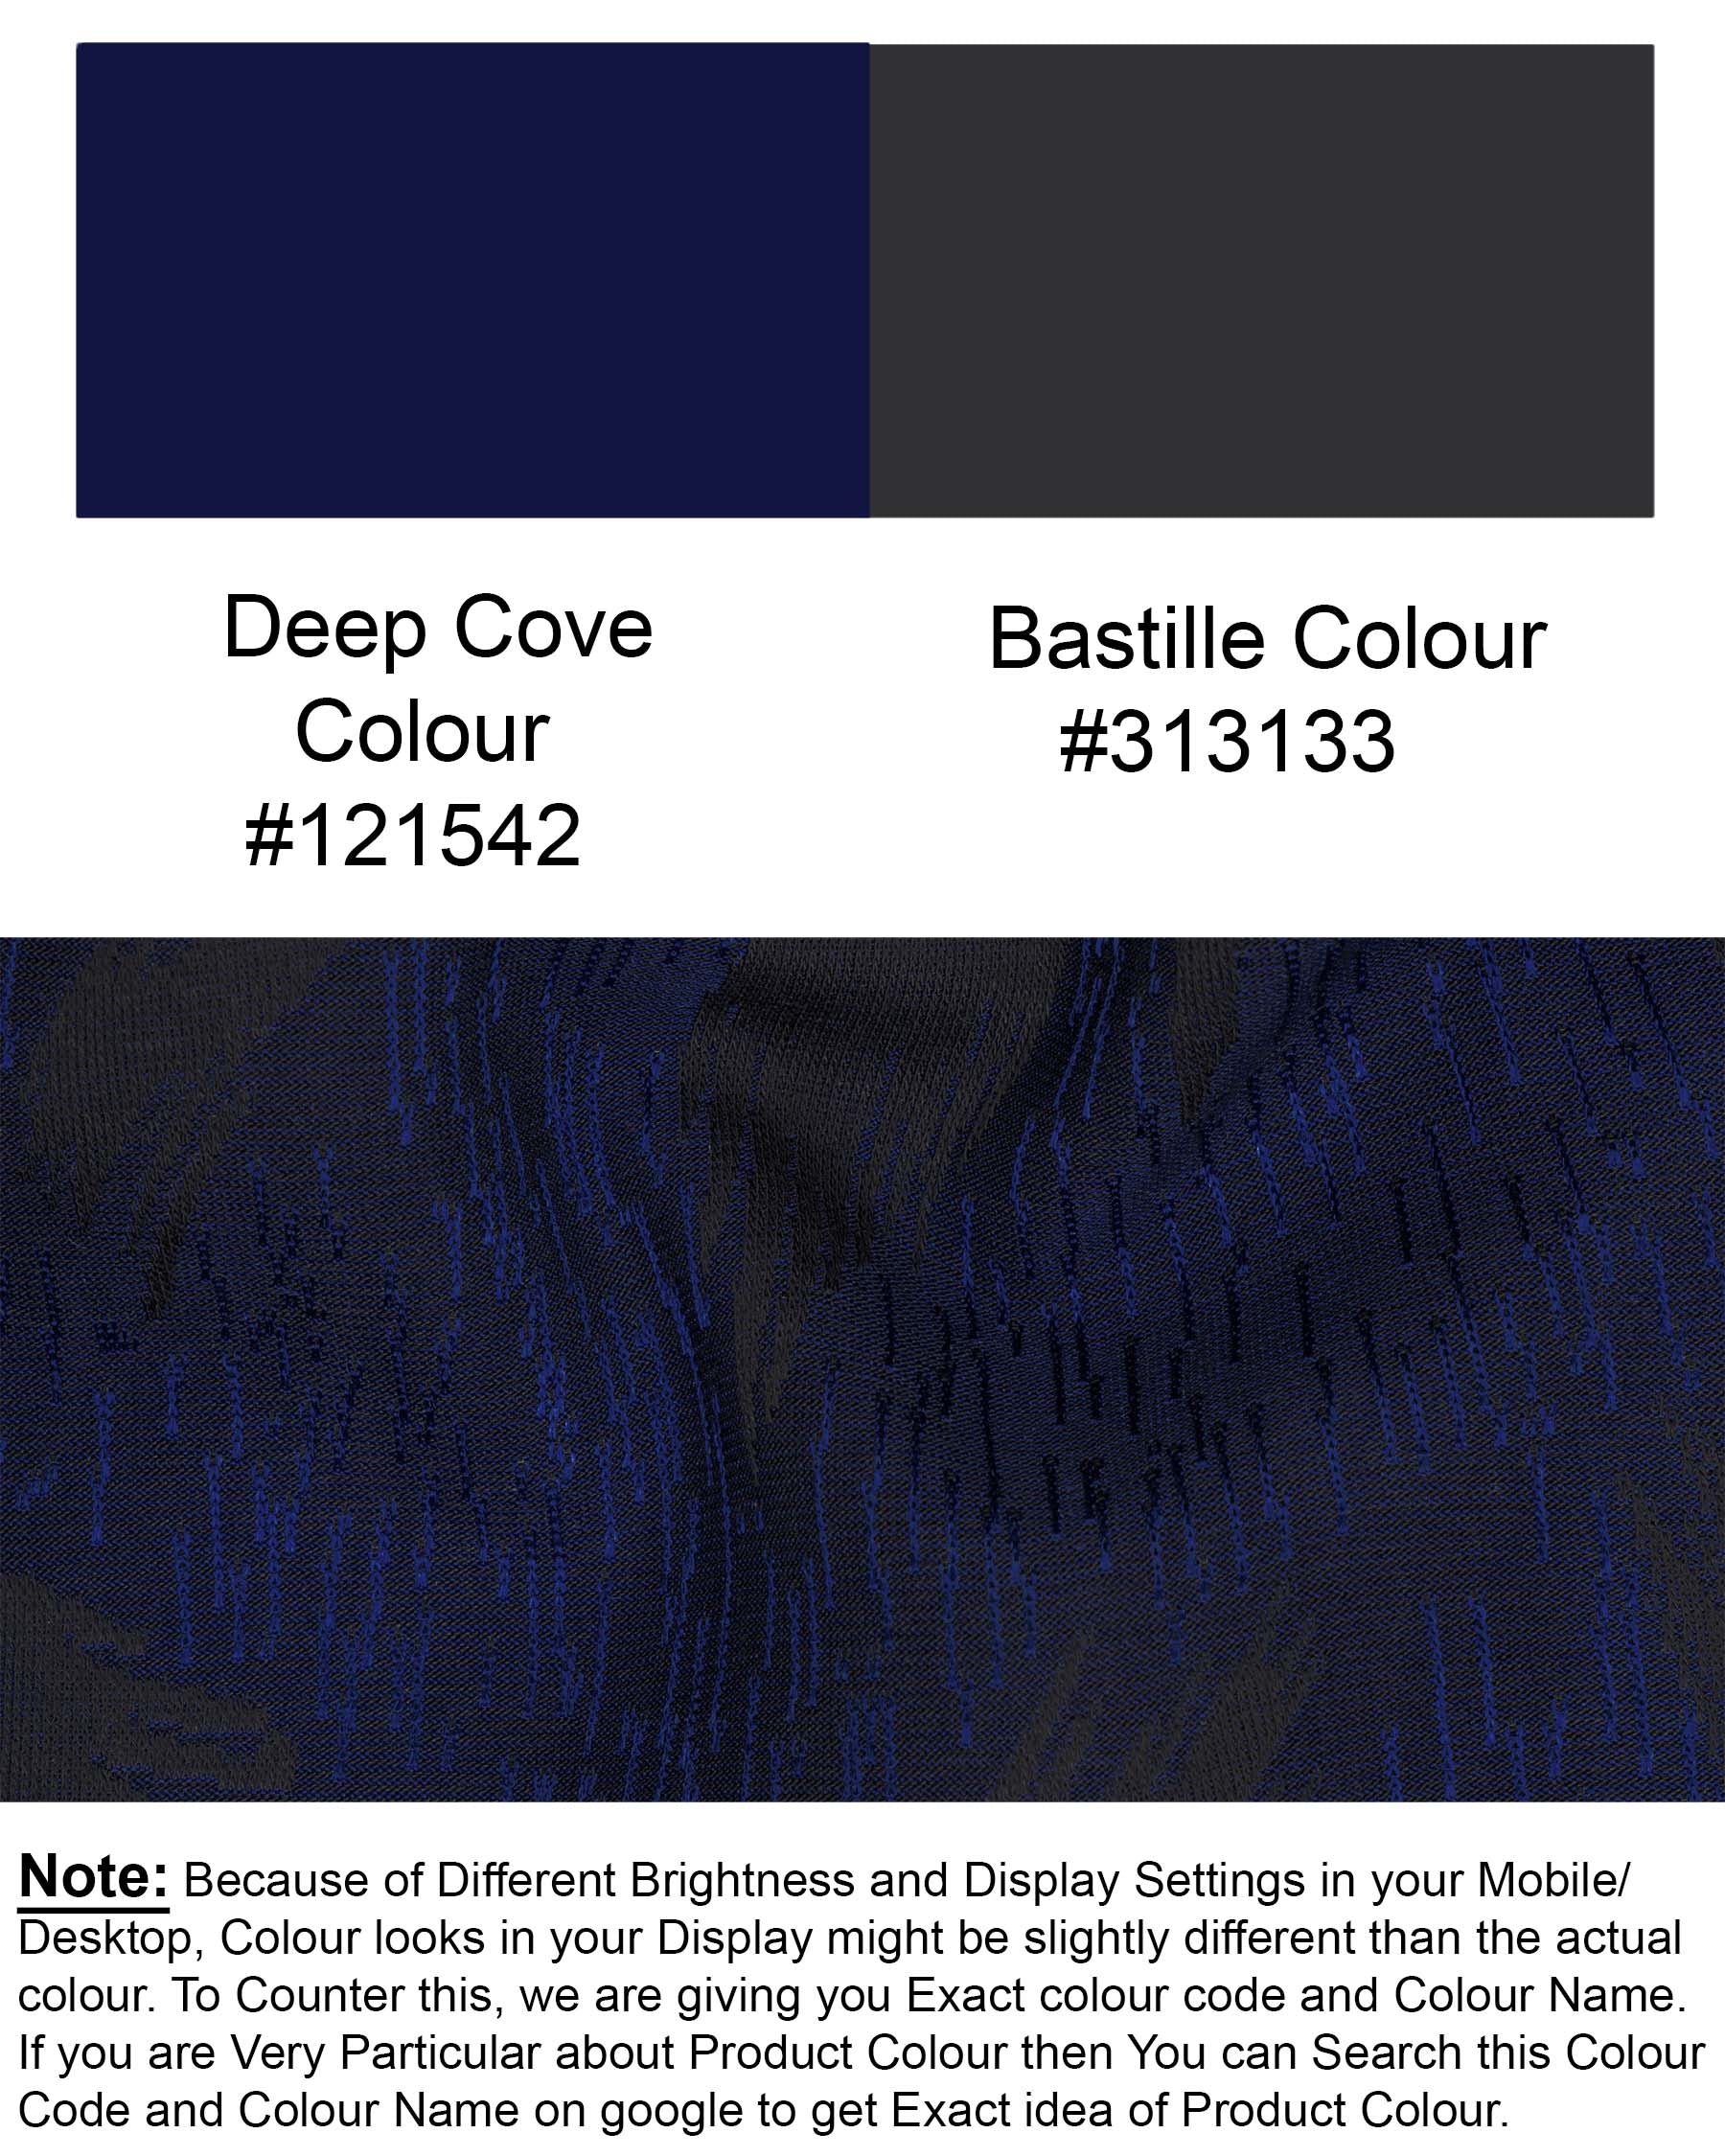 Deep Cove Blue Textured Cross Buttoned Bandhgala Blazer BL1795-CBG-36, BL1795-CBG-38, BL1795-CBG-40, BL1795-CBG-42, BL1795-CBG-44, BL1795-CBG-46, BL1795-CBG-48, BL1795-CBG-50, BL1795-CBG-52, BL1795-CBG-54, BL1795-CBG-56, BL1795-CBG-58, BL1795-CBG-60